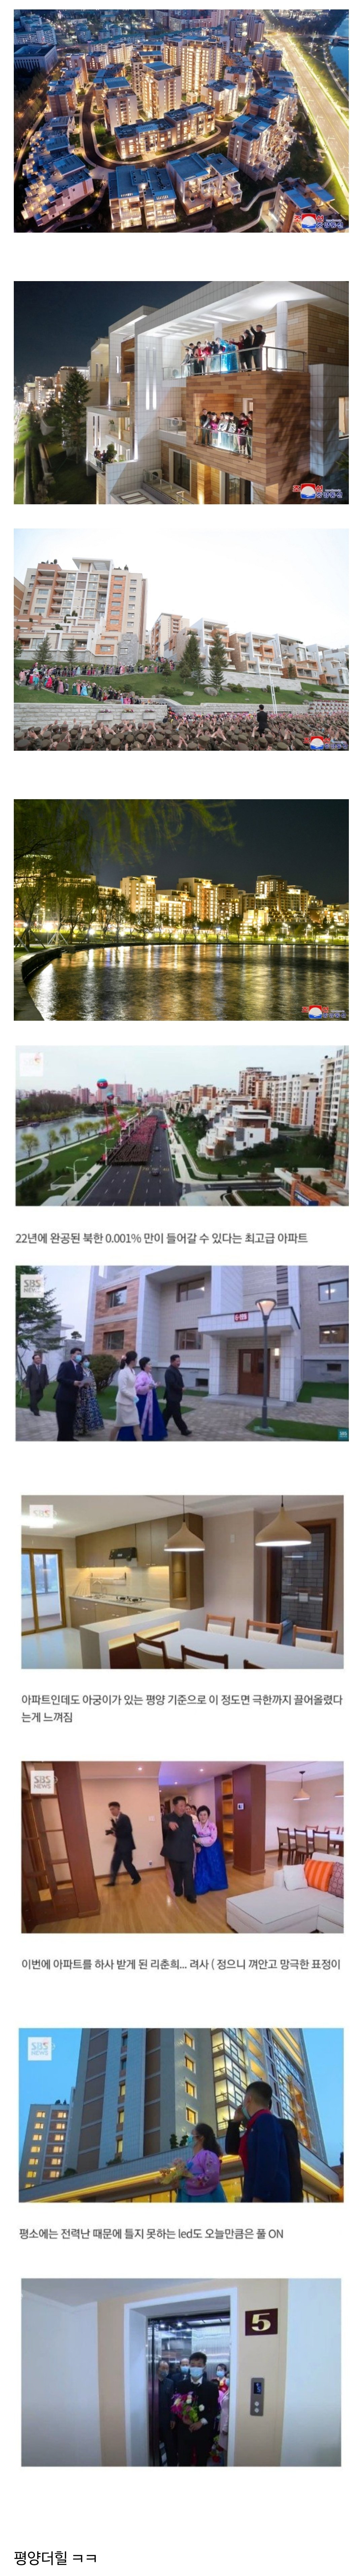 최근 북한에서 각잡고 만들었다는 고급 주거촌.jpg